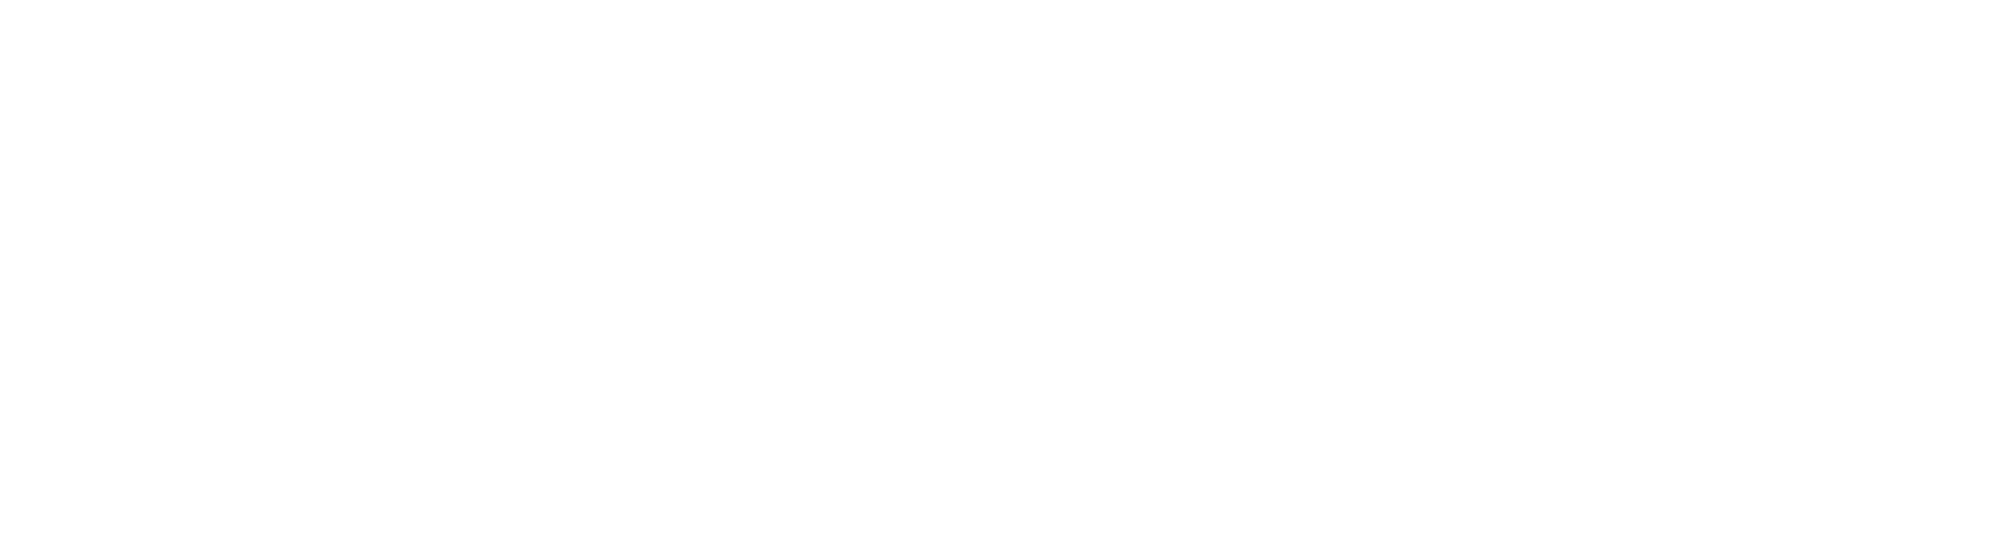 BEGIN3D.com